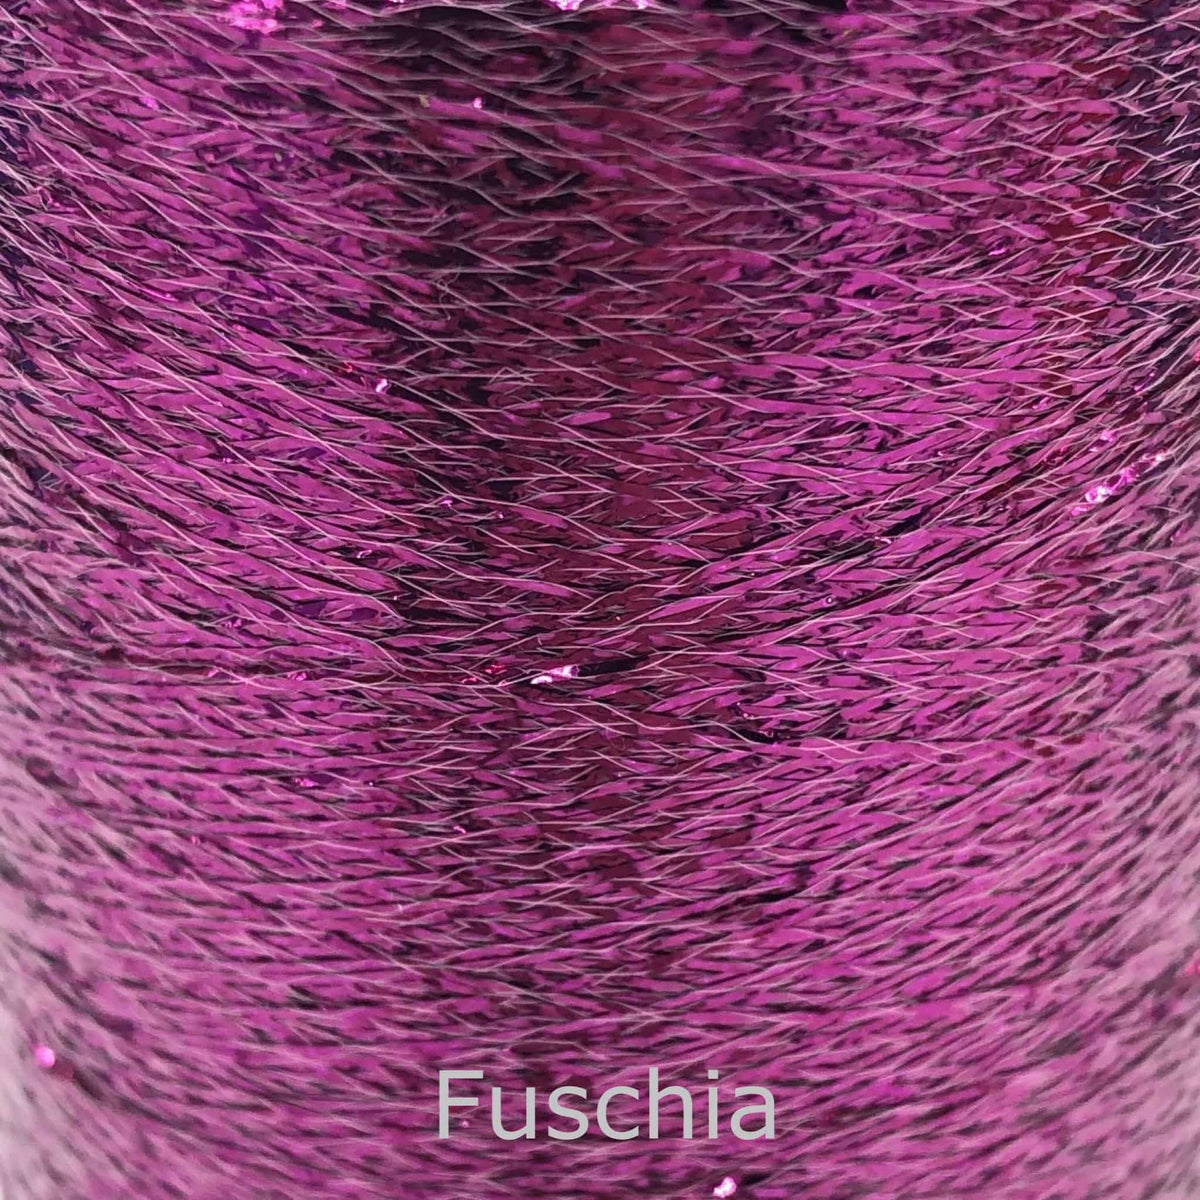 Metallic-Yarn-Fuschia-Maurice-Brassard